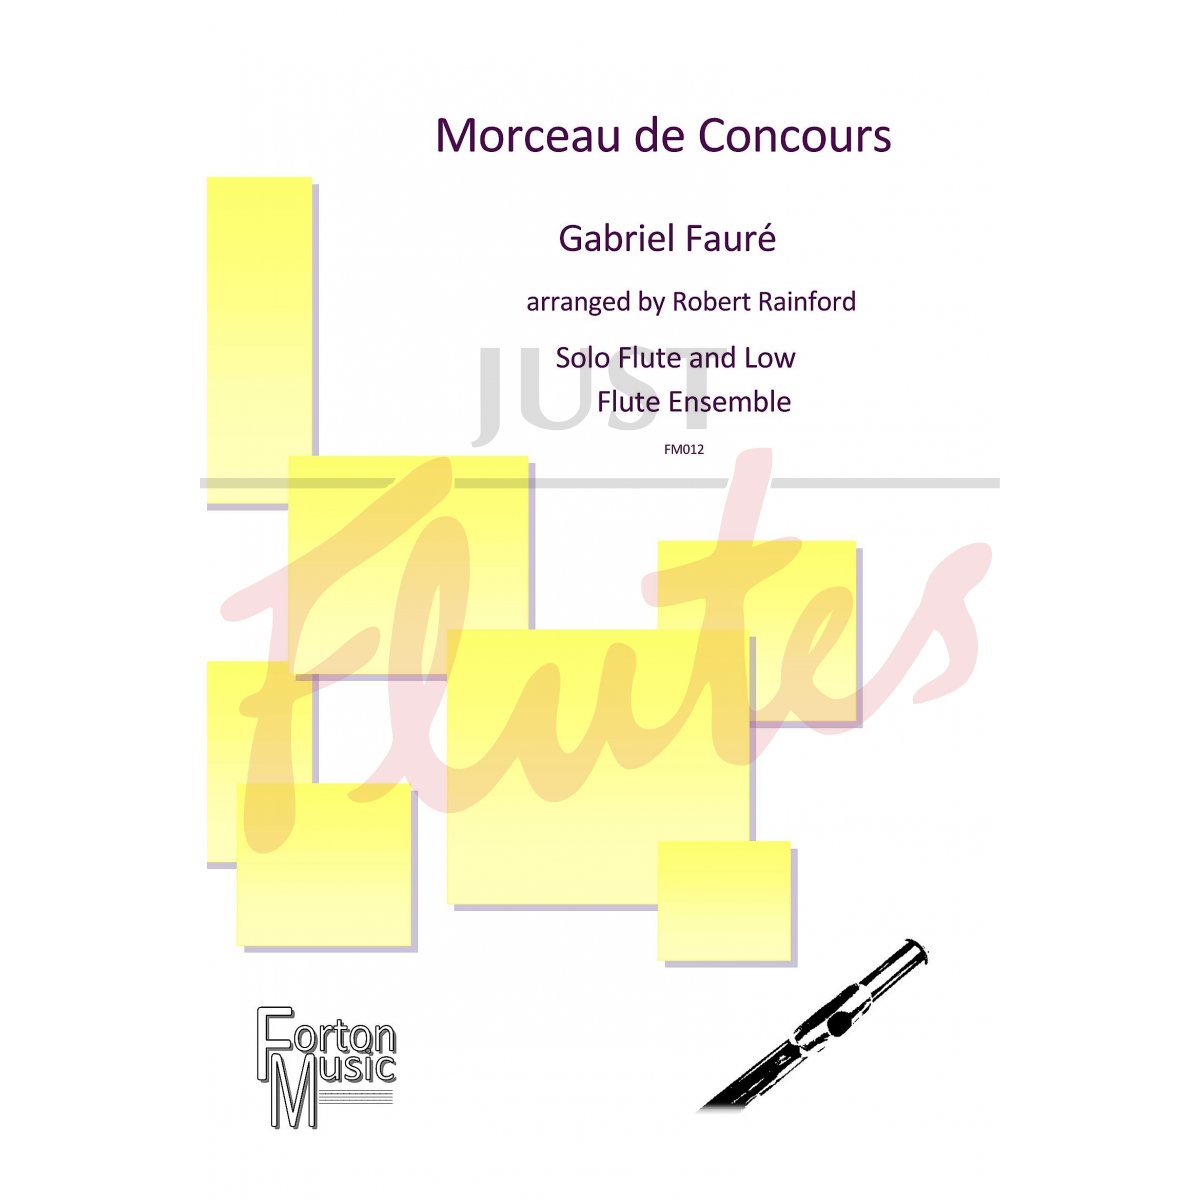 Morceau de Concours for Solo Flute and Low Flute Ensemble